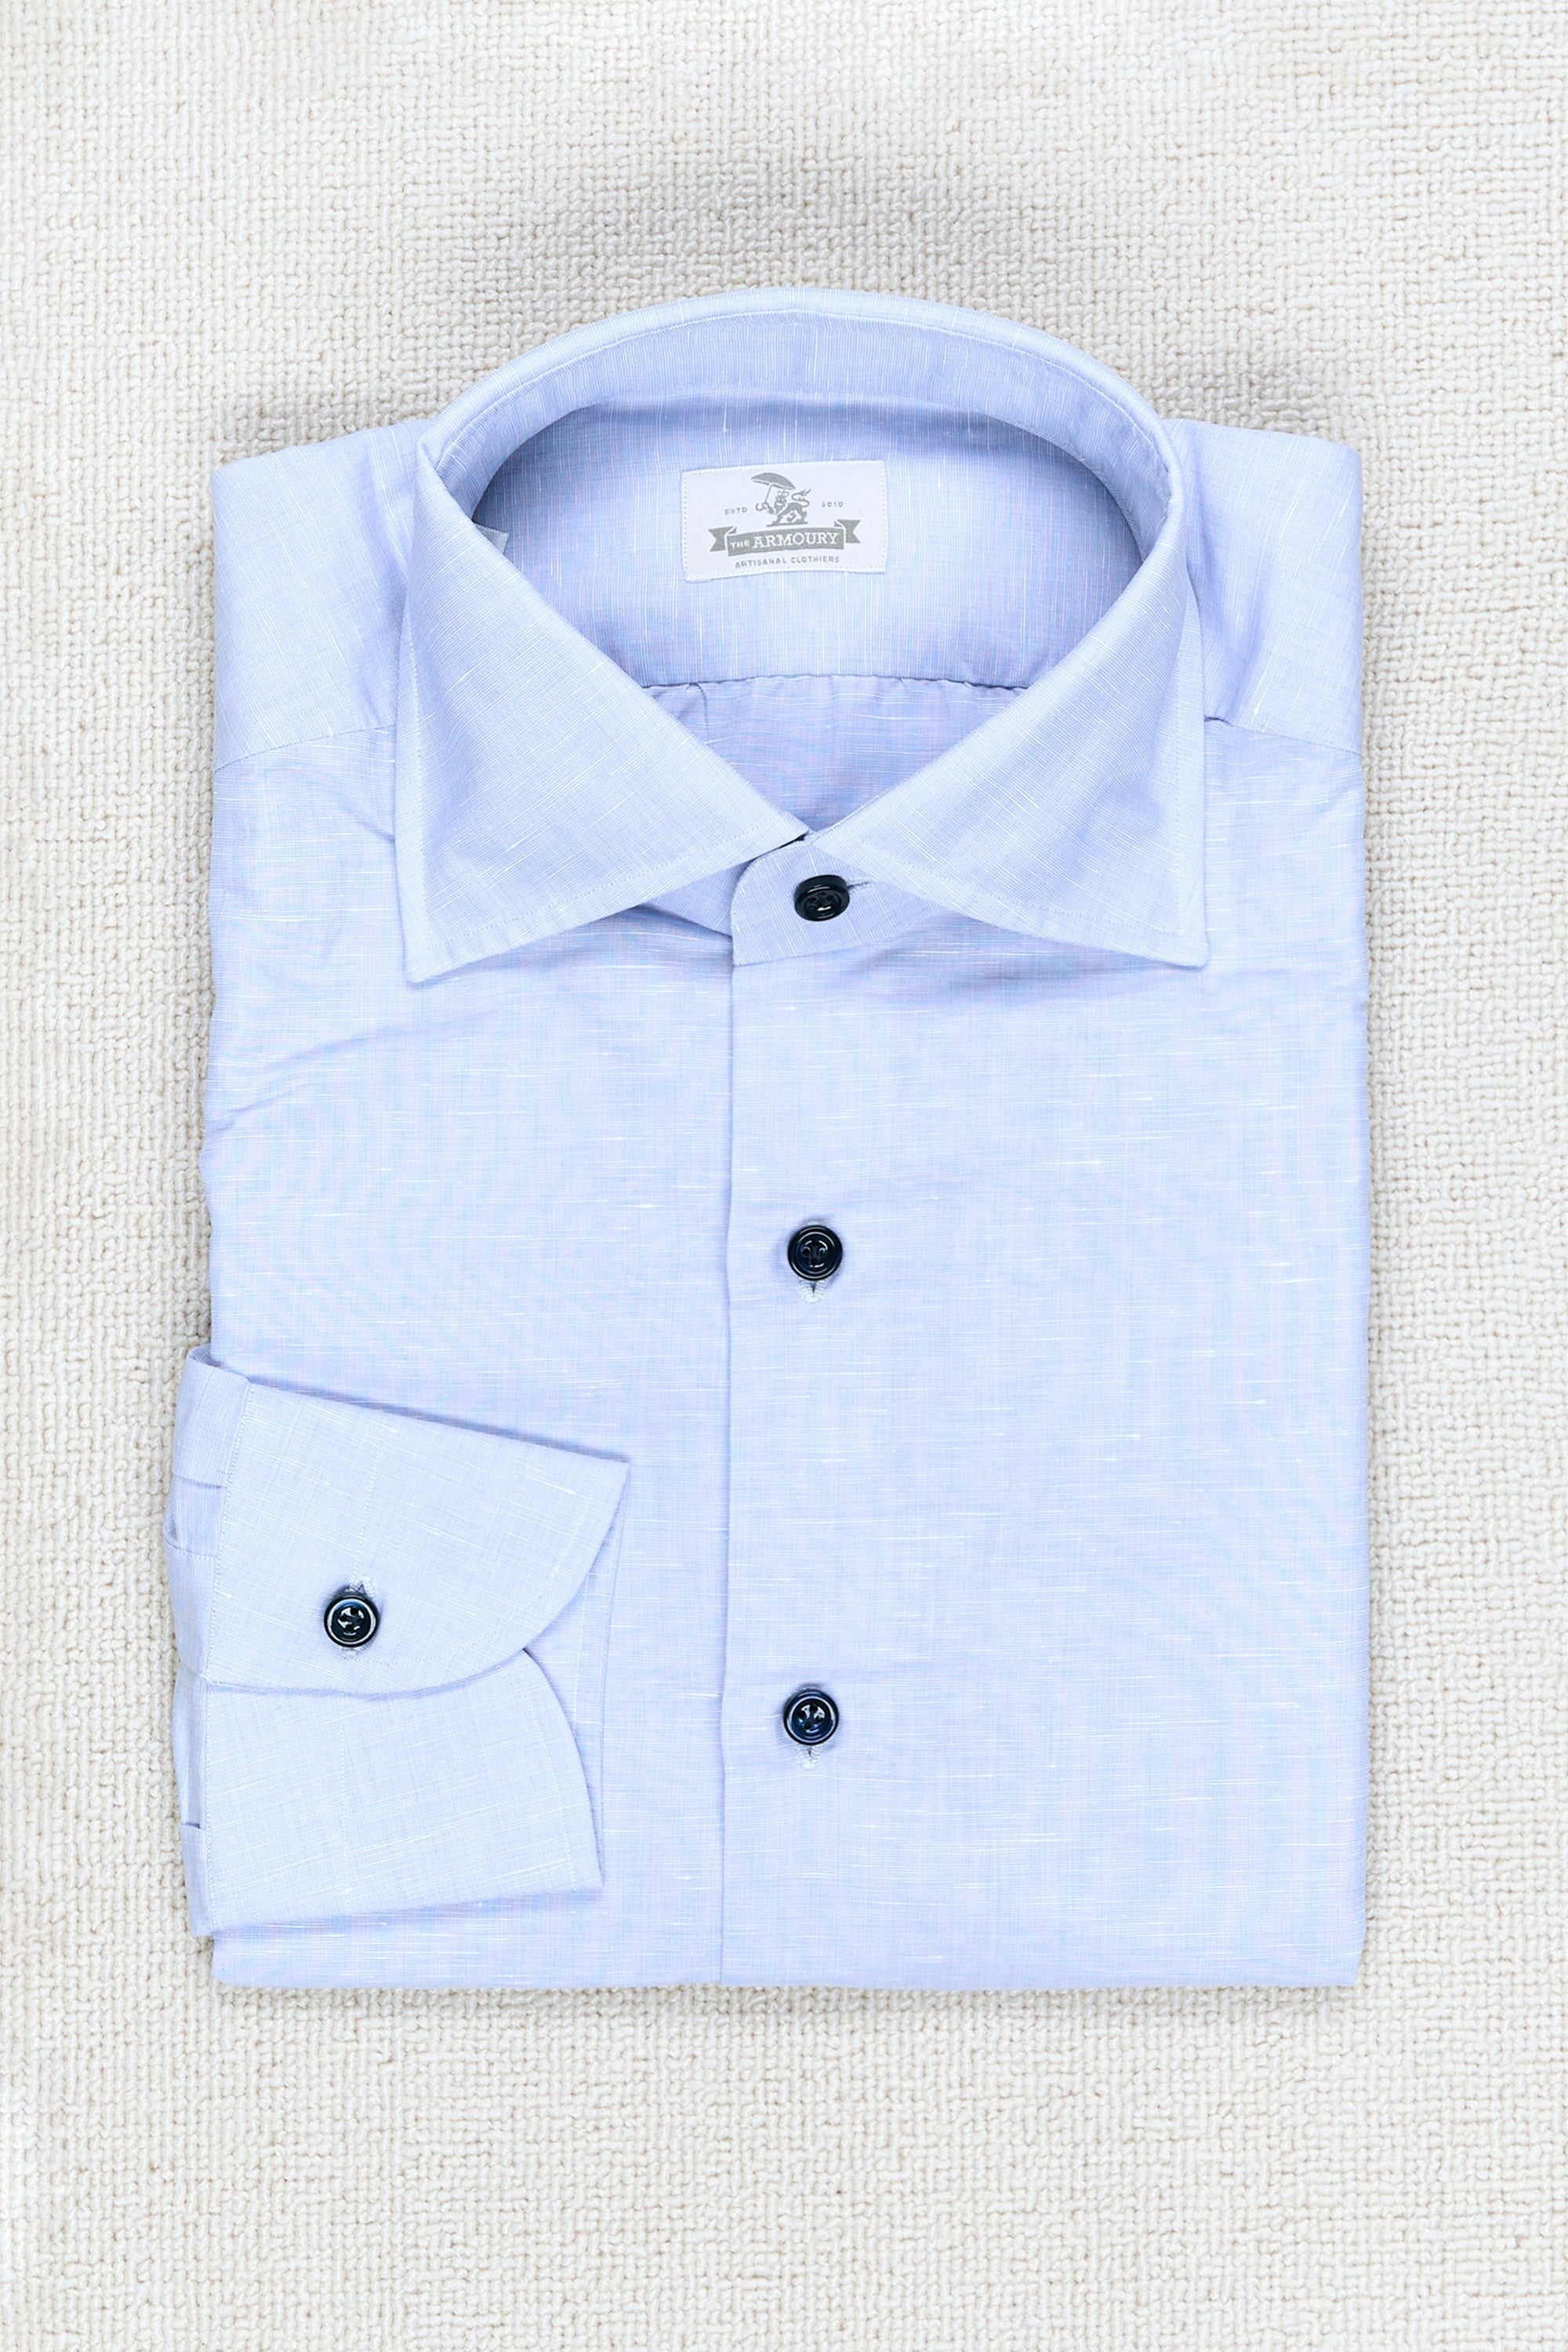 The Armoury Blue Linen/Cotton Spread Collar Shirt